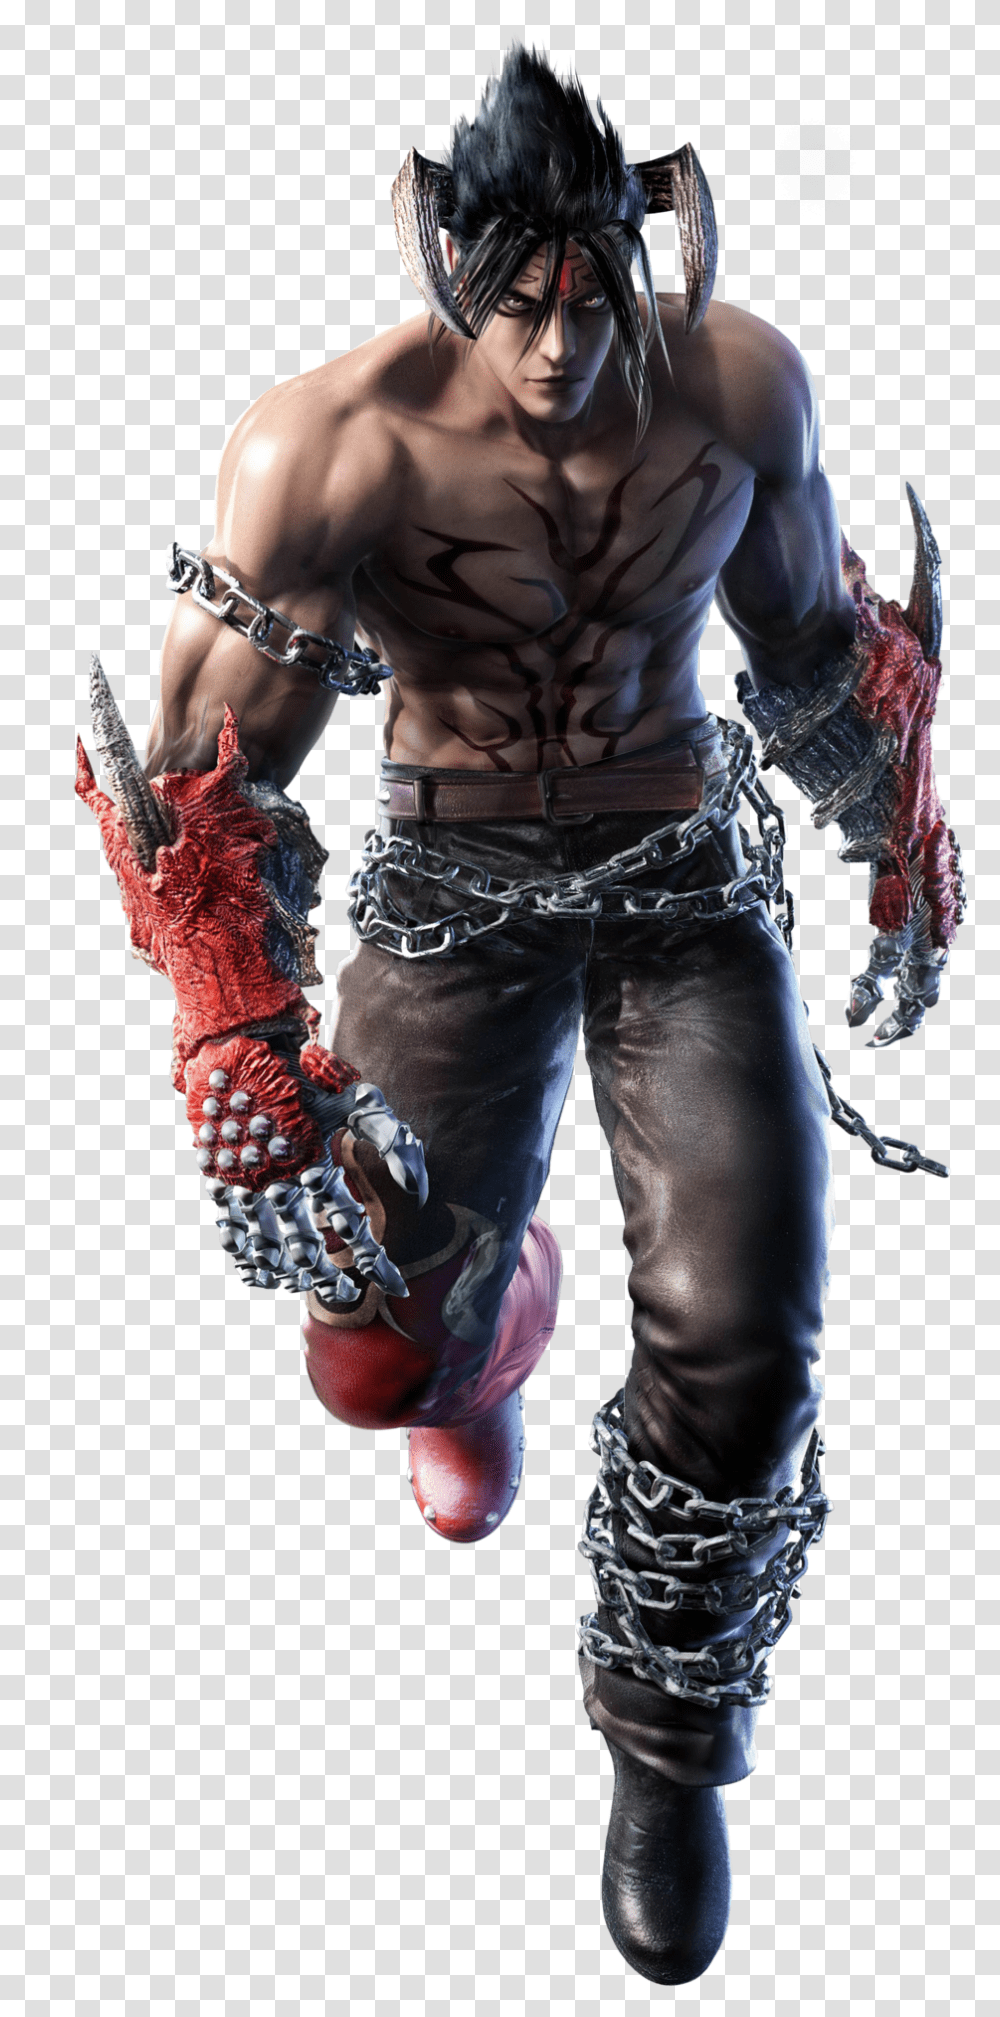 Download Action Character Tekken Figure Tekken Devil Jin, Skin, Person, Human, Clothing Transparent Png